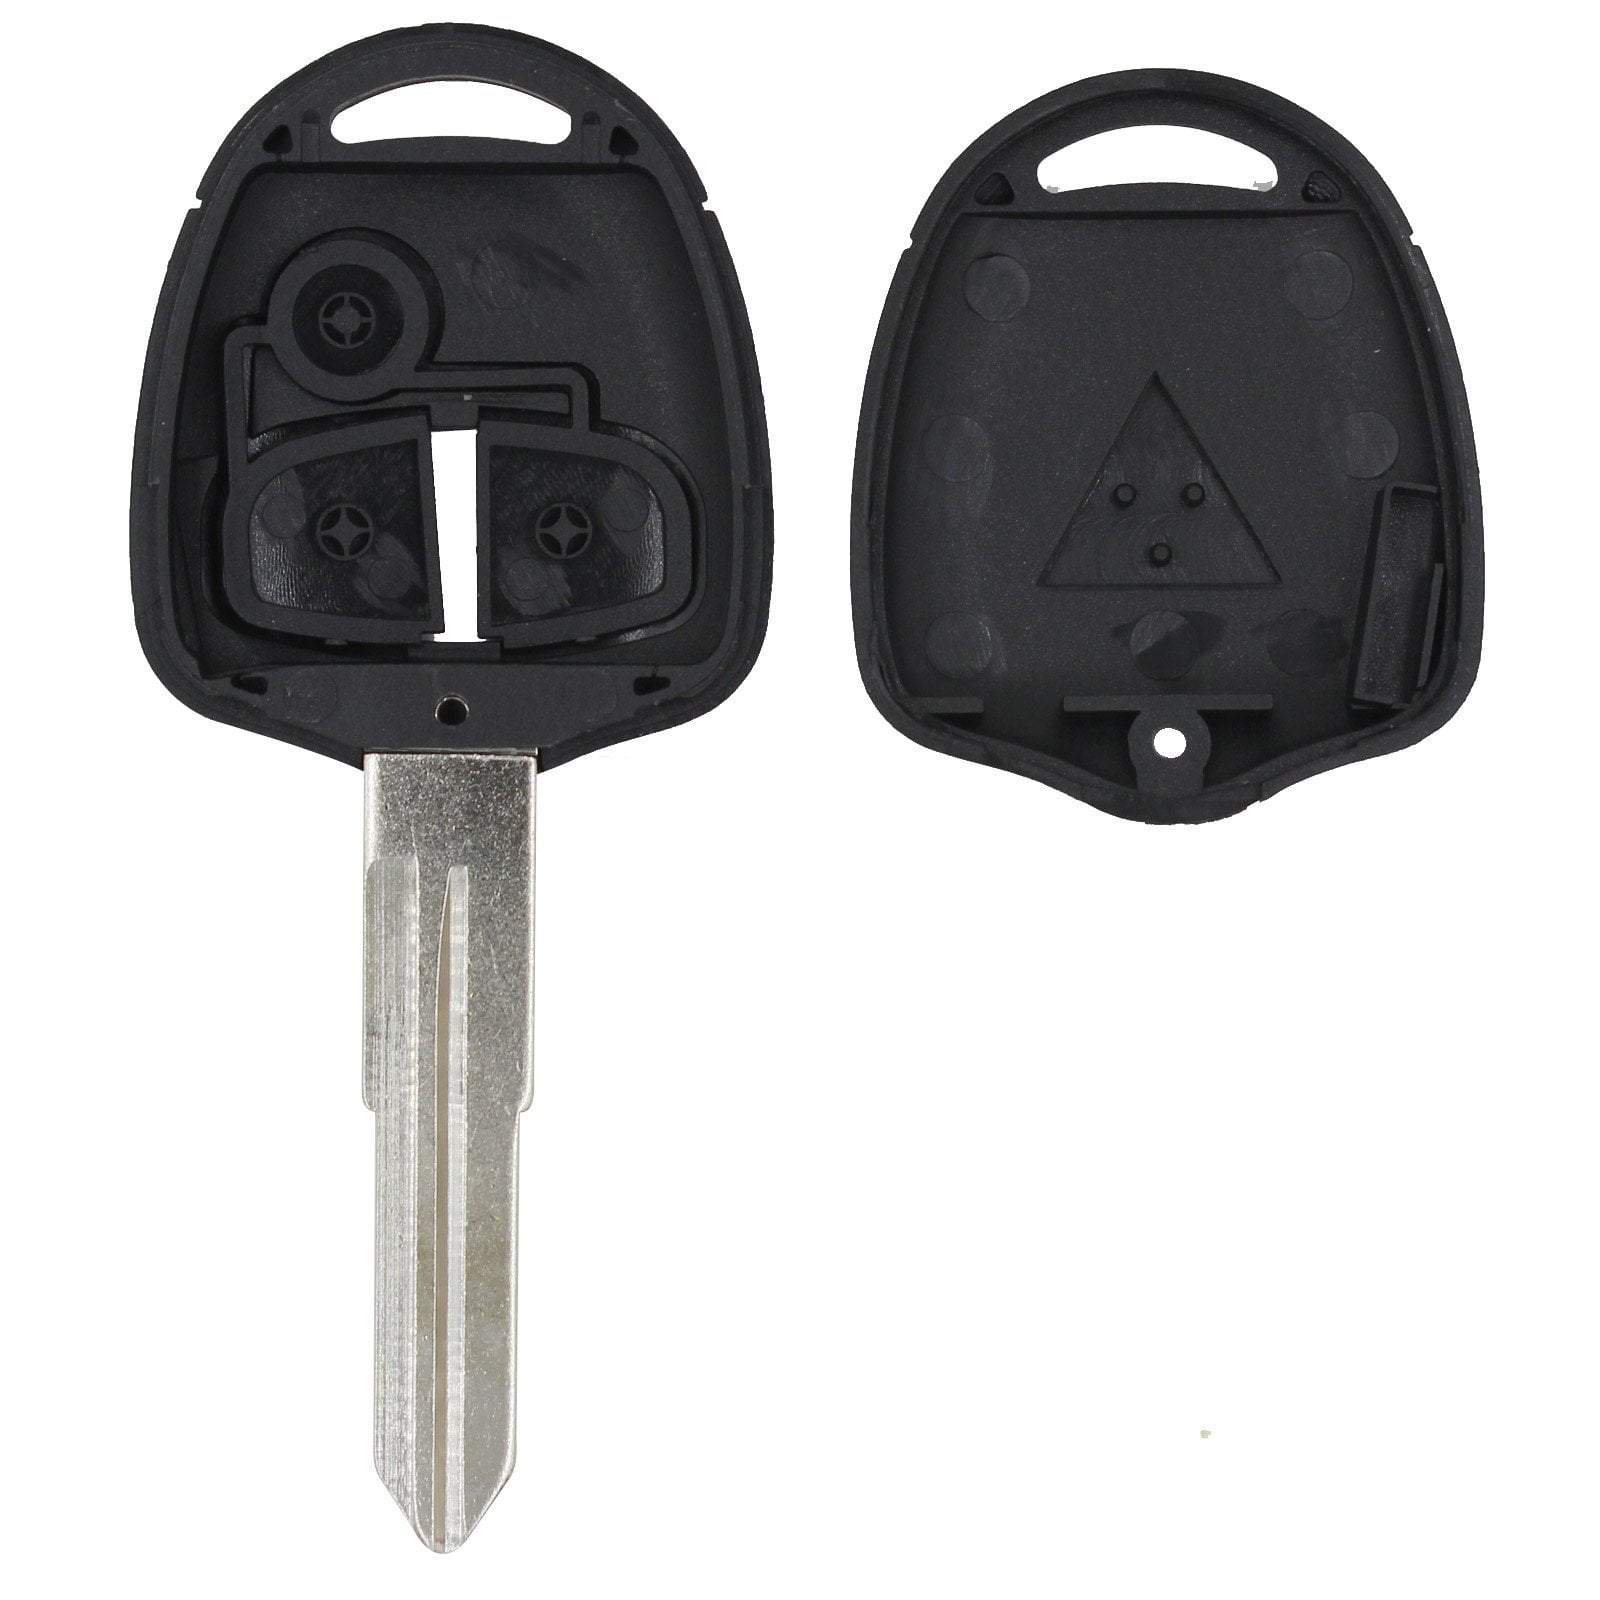 Fekete színű, 2 gombos Mitsubishi kulcs, kulcsház szétszedve